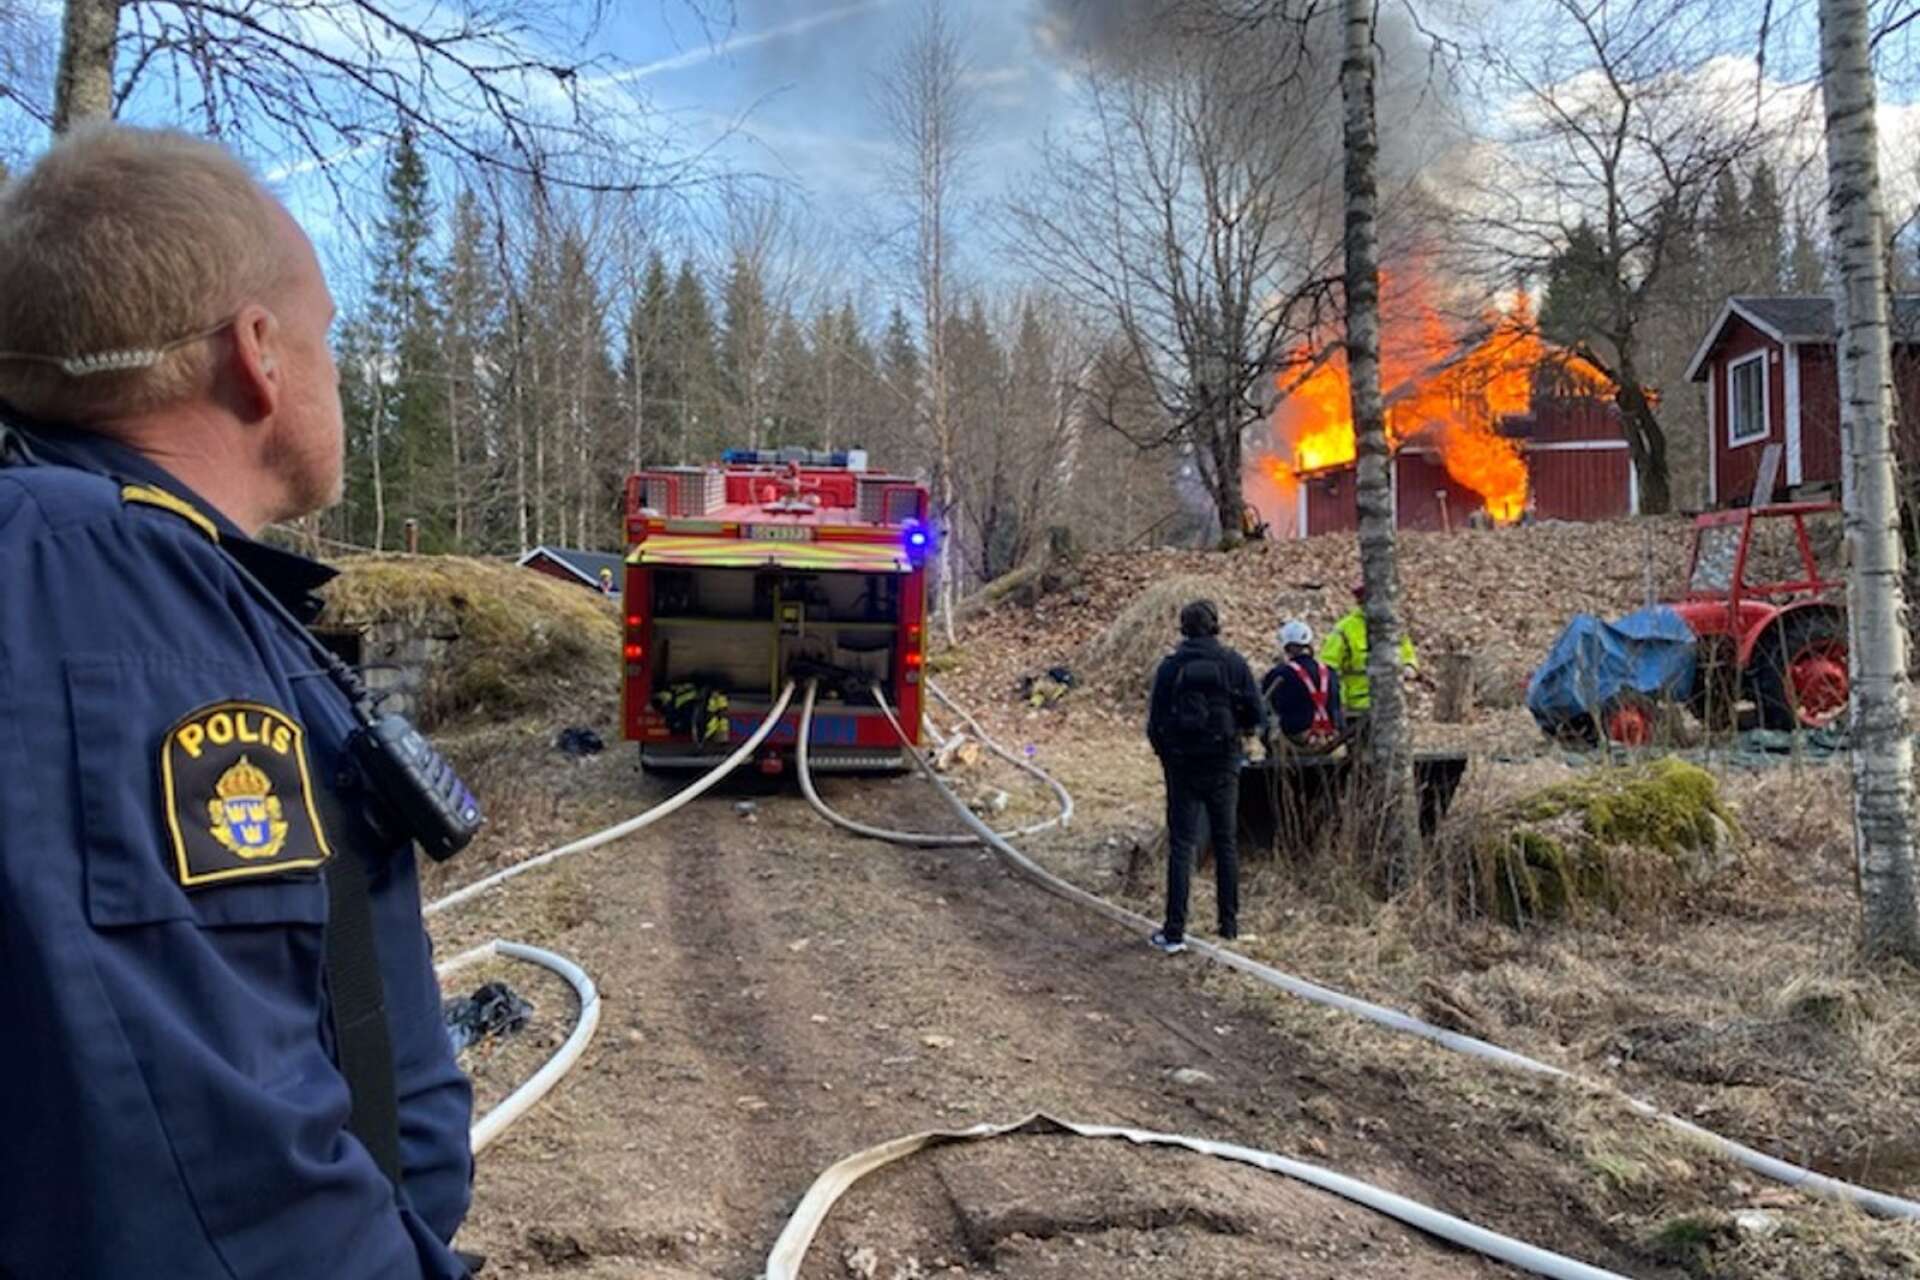 Huset har fått brinna ned under kontrollerade former, enligt SOS alarm som svarar för Räddningsregion Bergslagen.